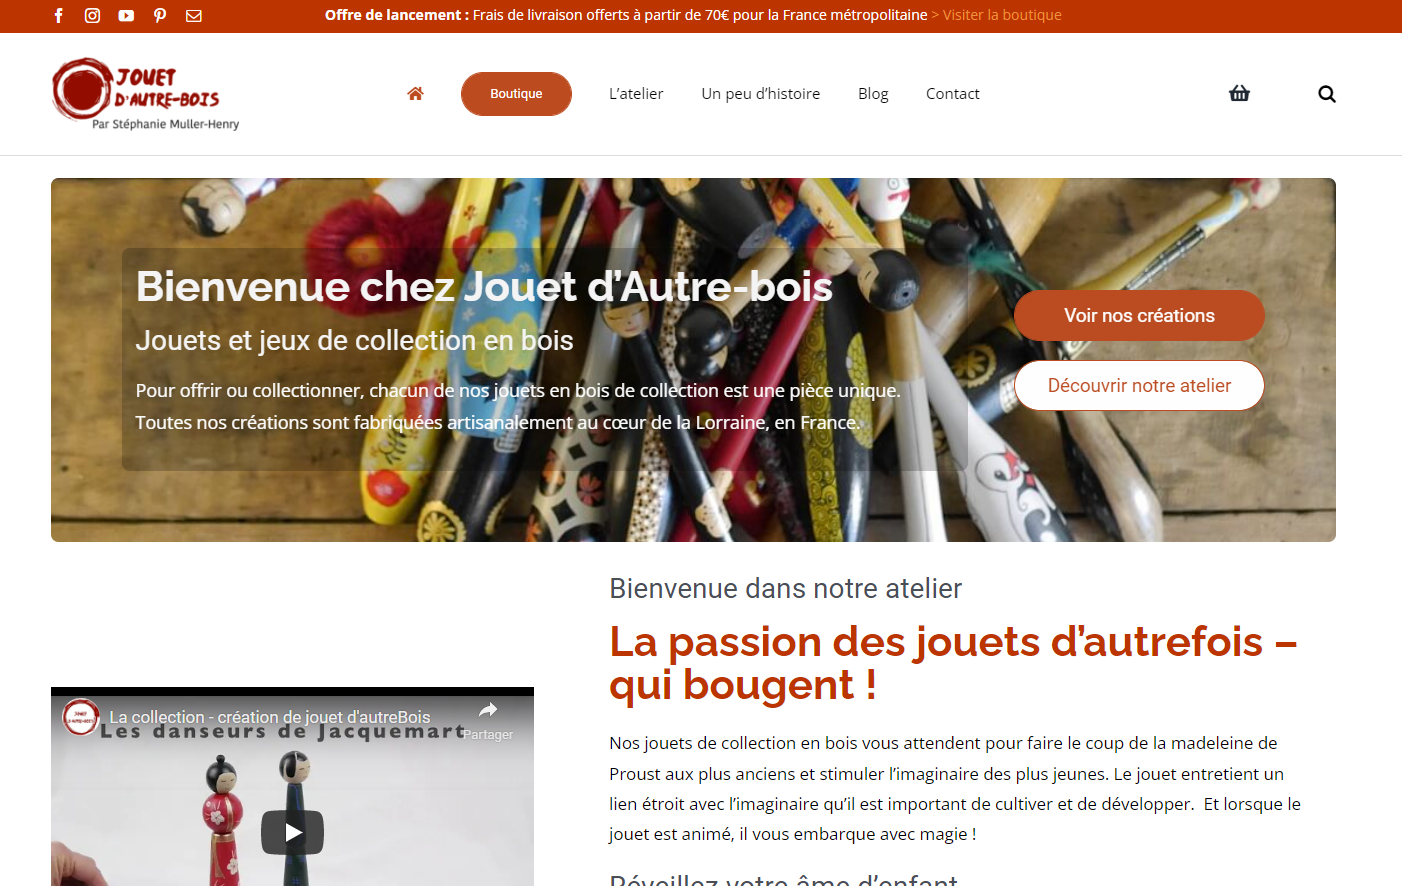 Image d'accueil du site Jouet d'Autrebois